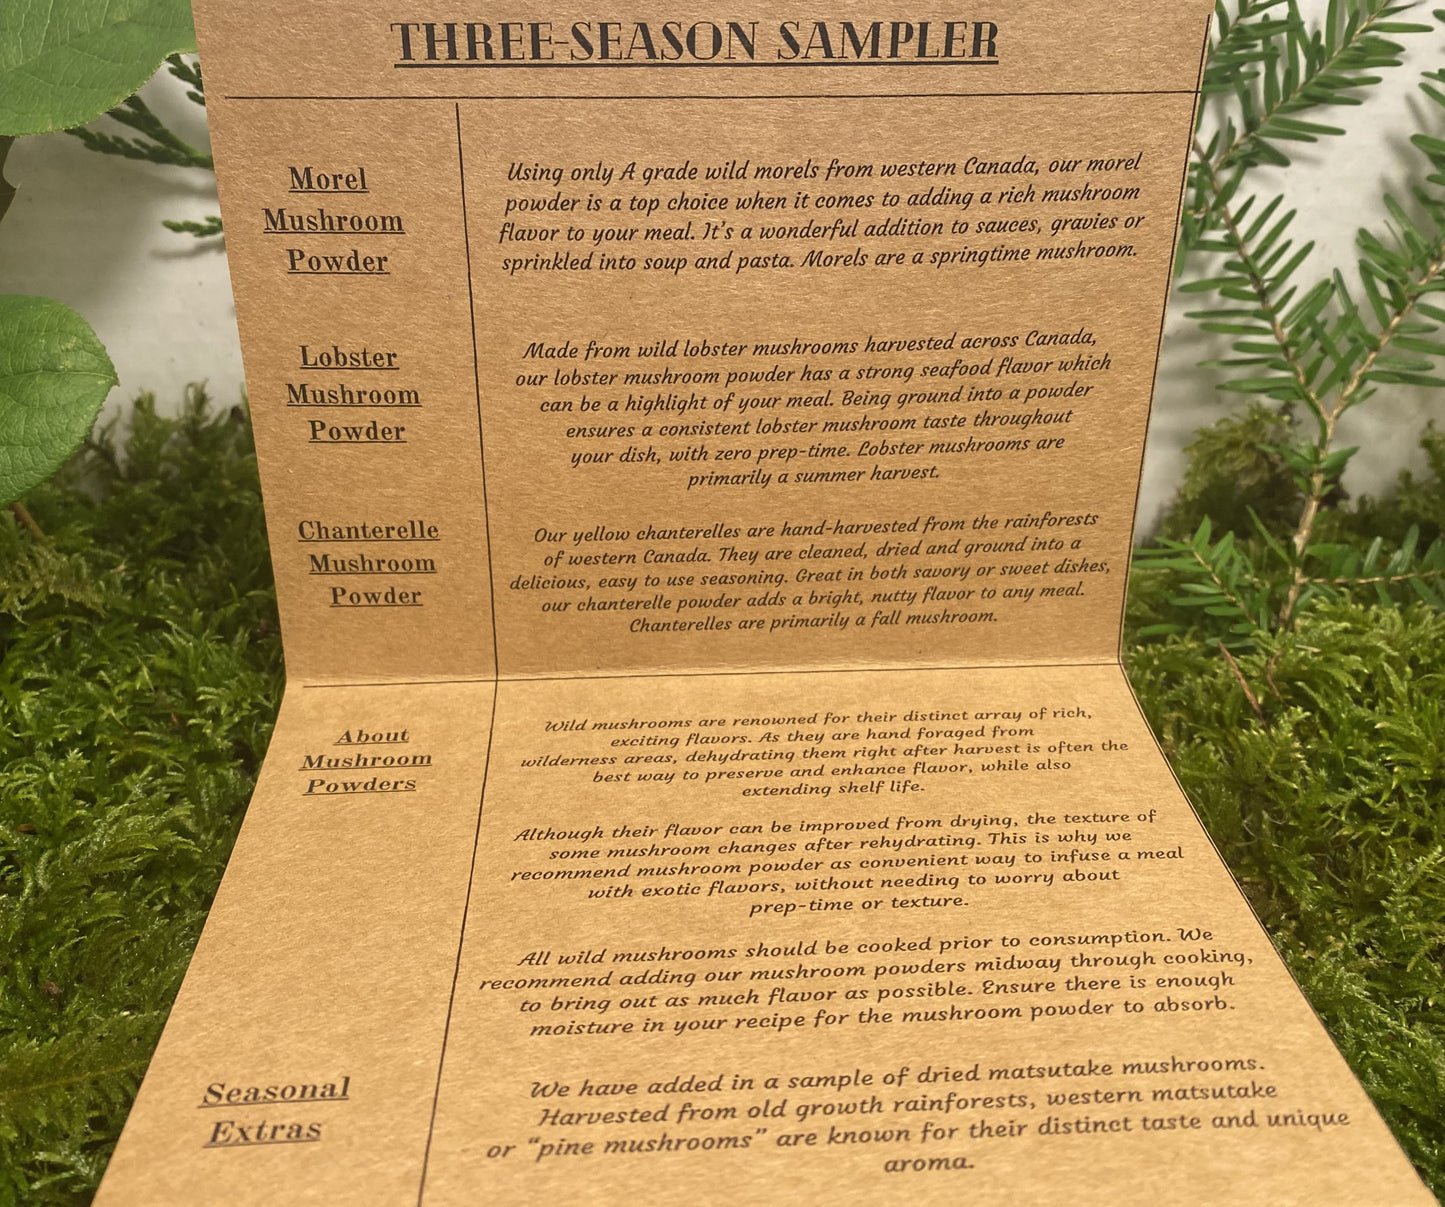 Three-Season Sampler - Mushroom Powder Variety Box